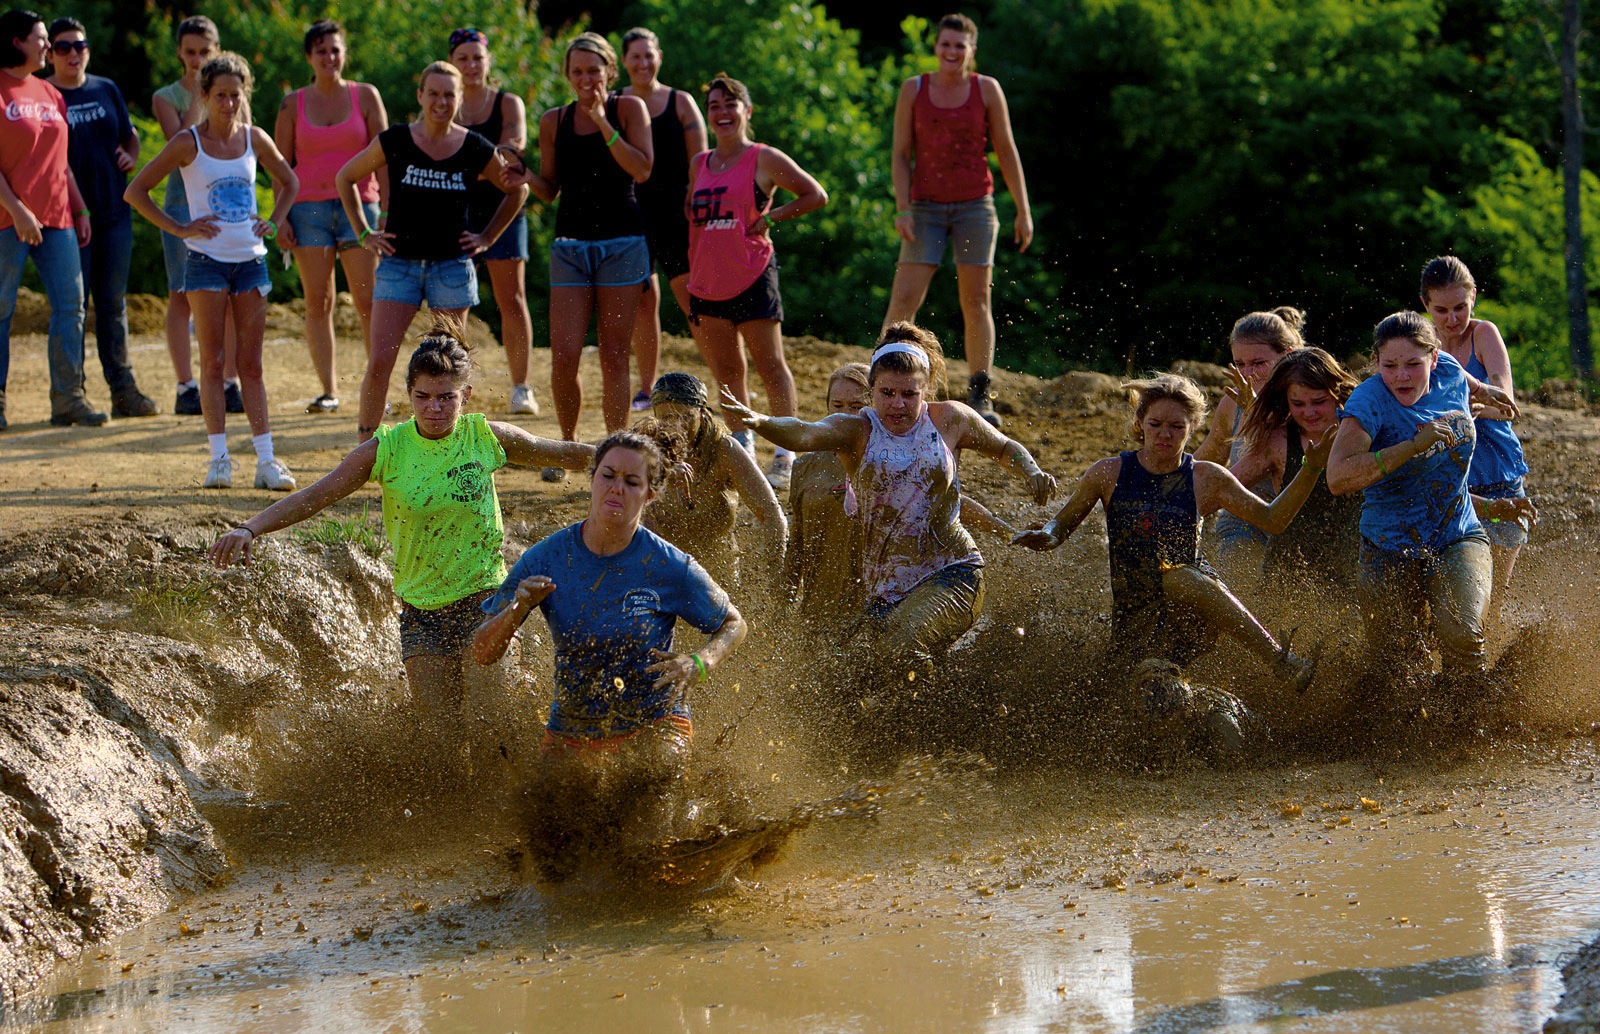 Les mud run ou courses à obstacles.